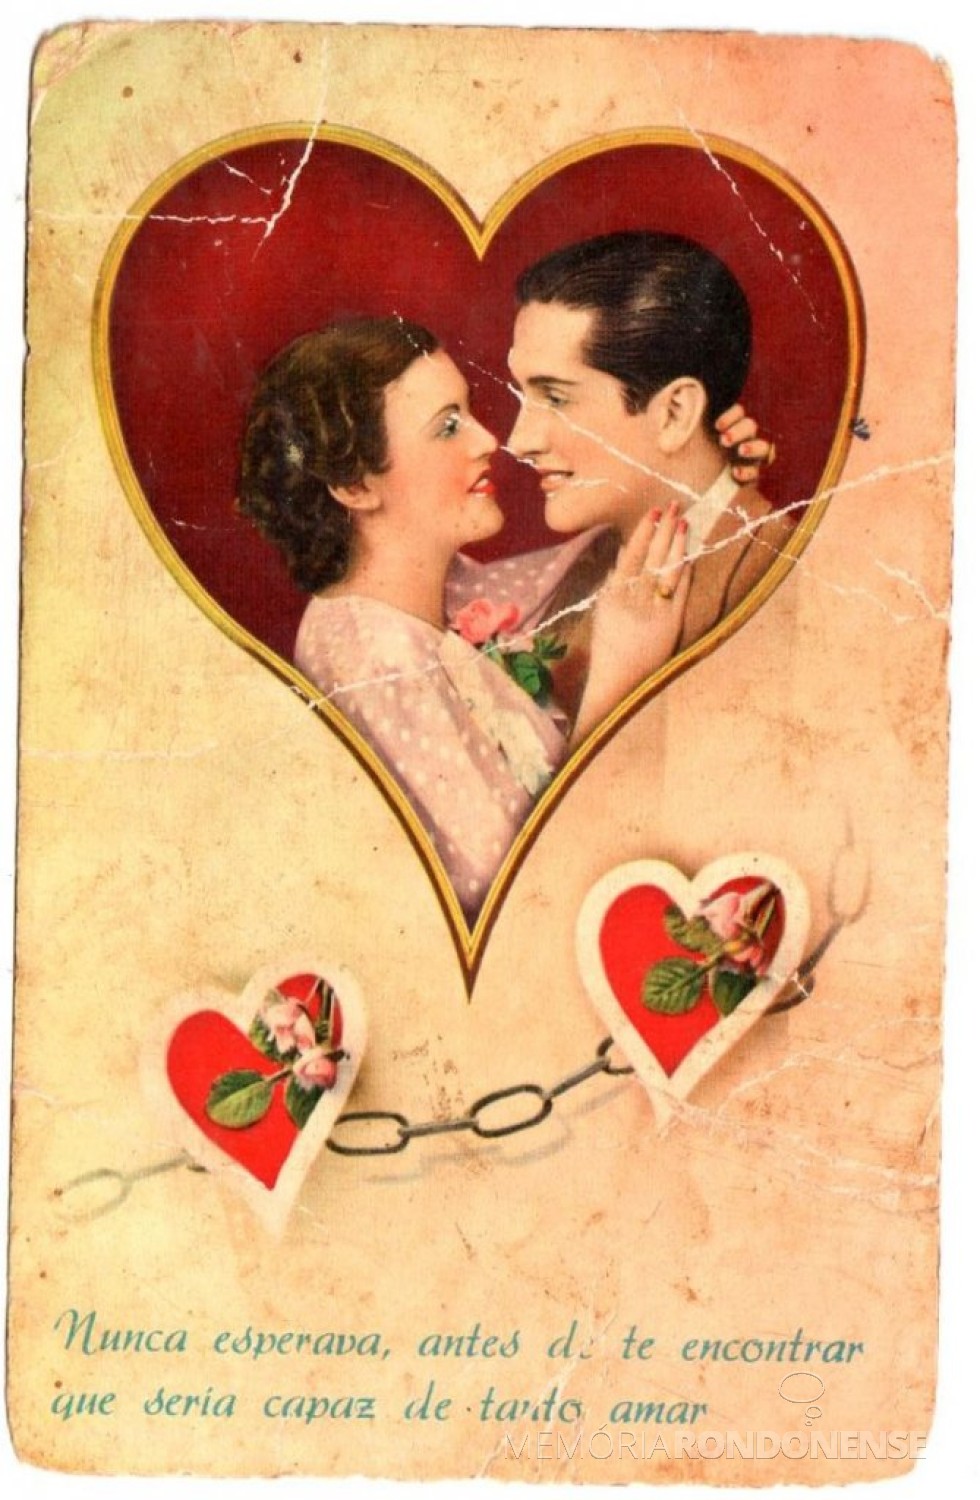 || Cartão do Dia de Namorados da década de 1950:
Imagem: Acervo da pioneira rondonense Norma (nascida Koehler ) Livi - FOTO 3 - 